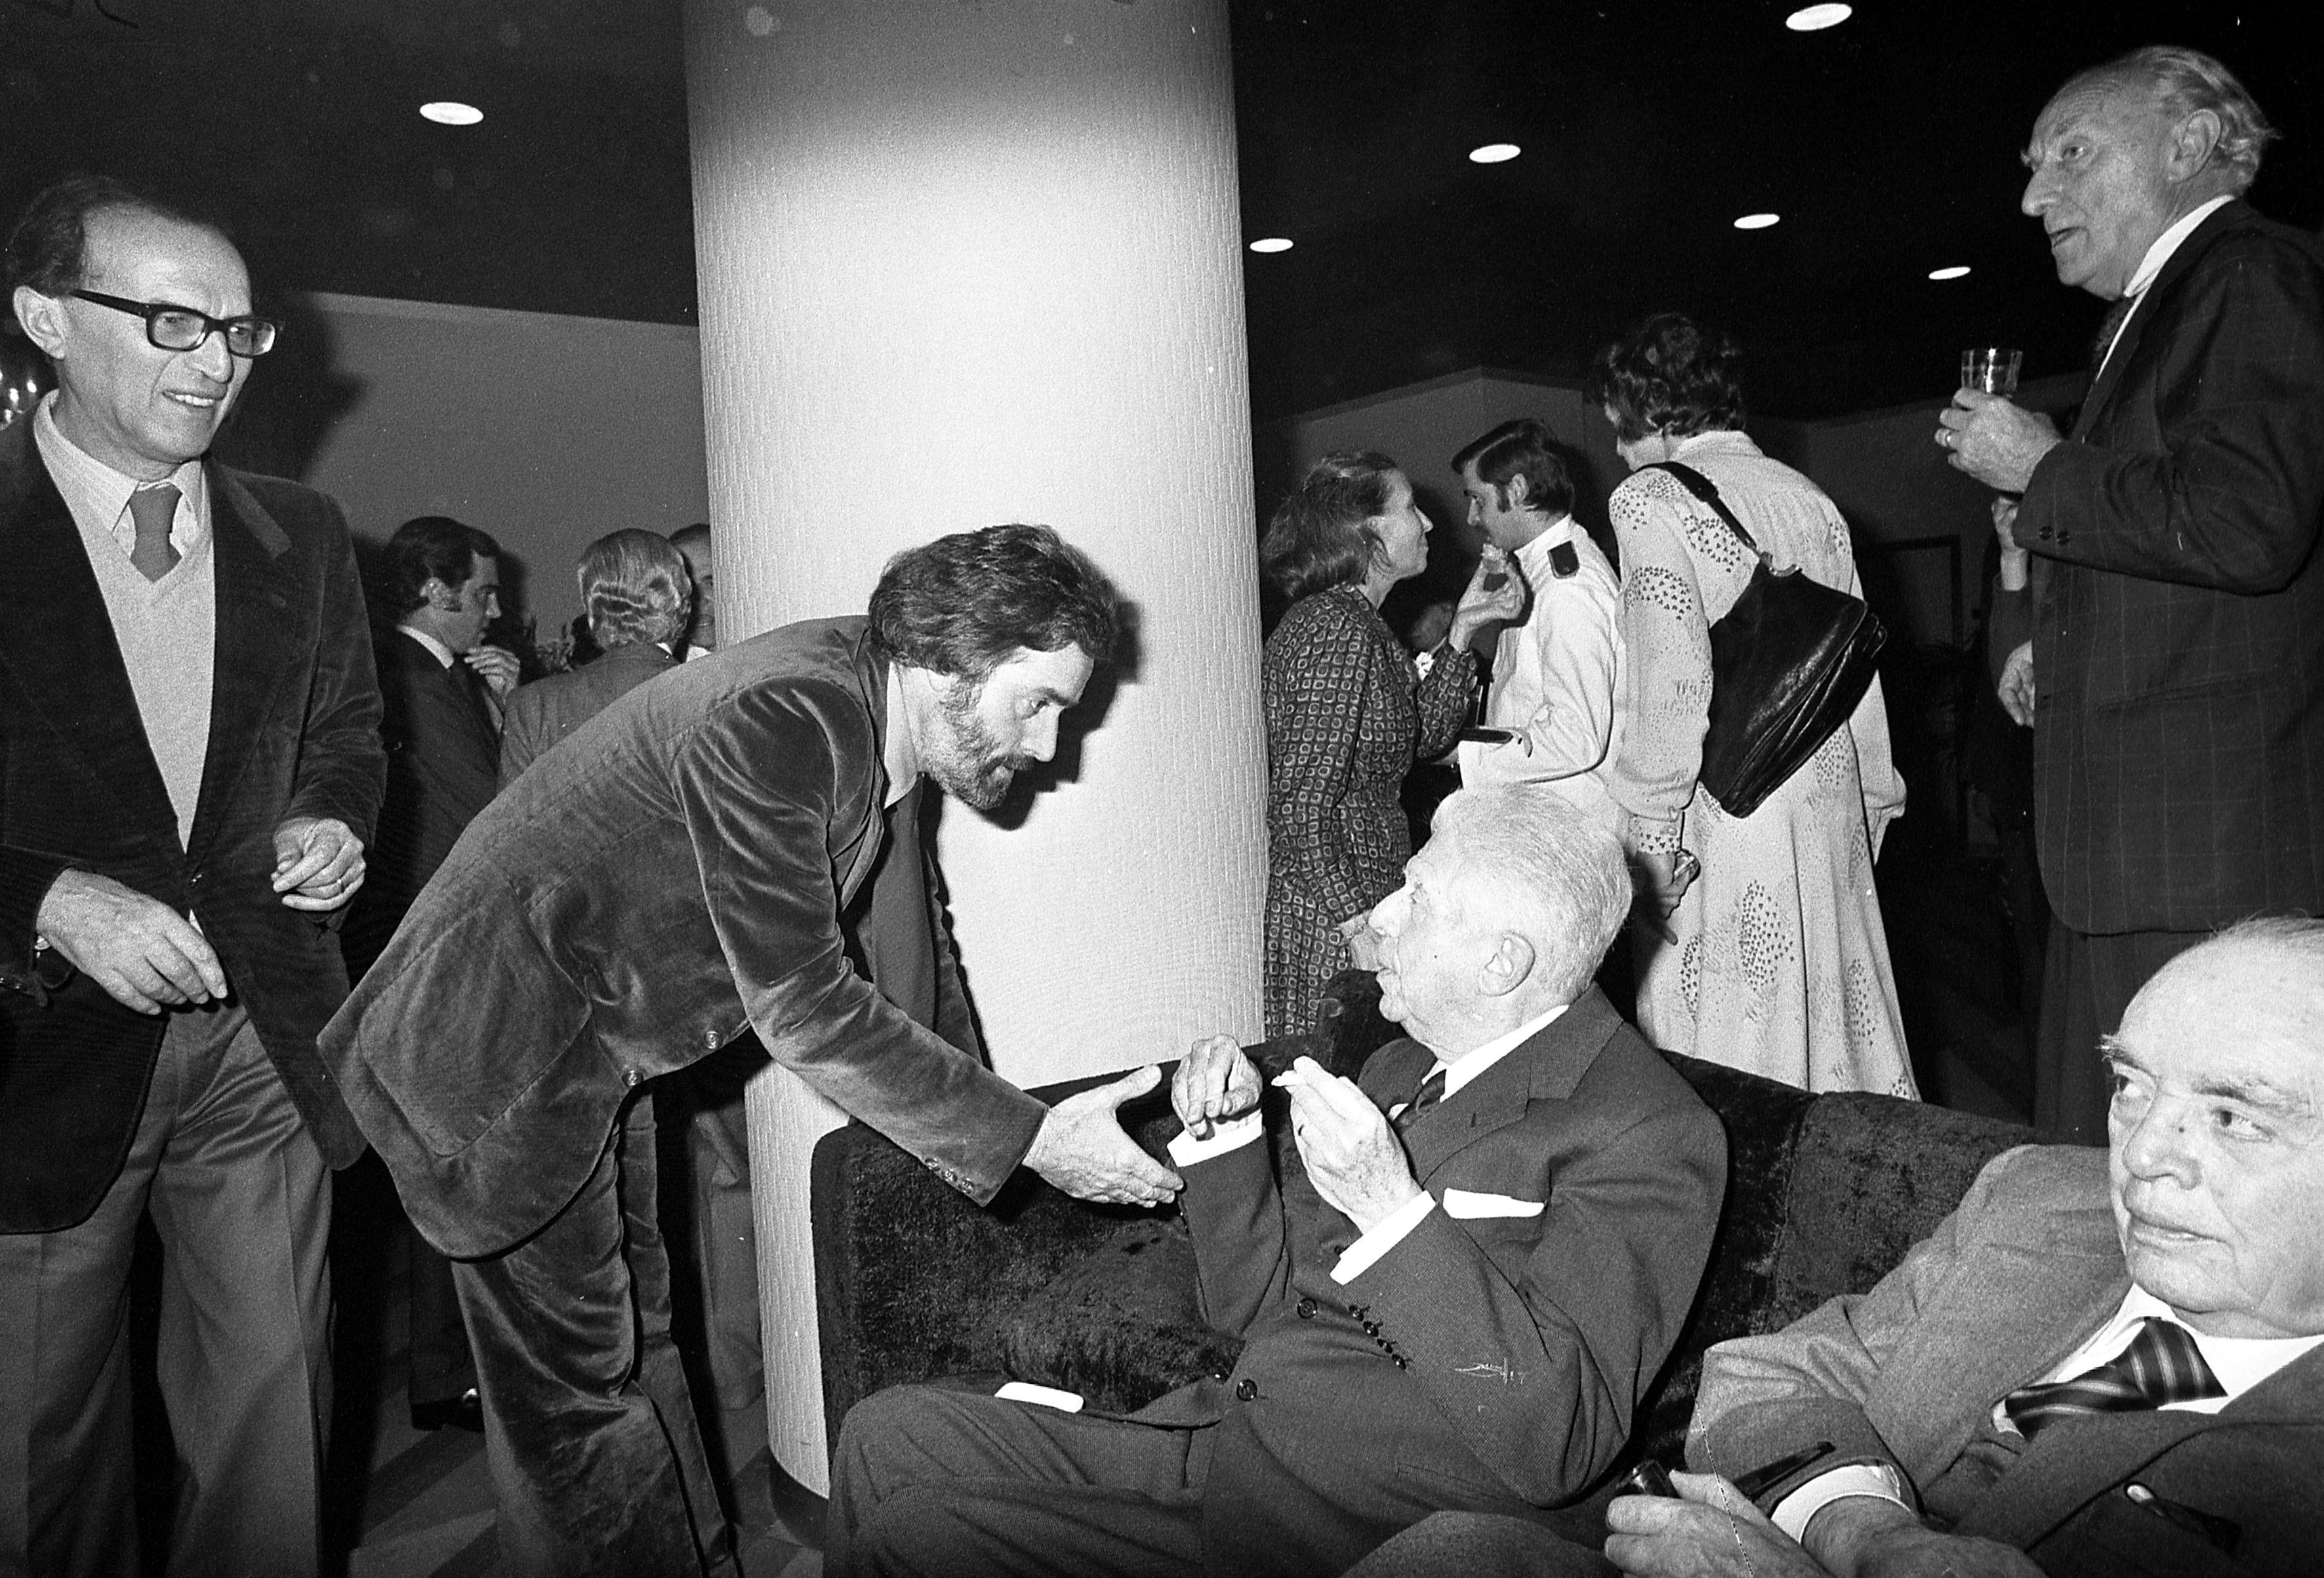 Milano, H​otel Principe, 1975 - Festa pe​r il poeta Eugenio Montale, vi​ncitore del Premio Nobel per l​a Letteratura